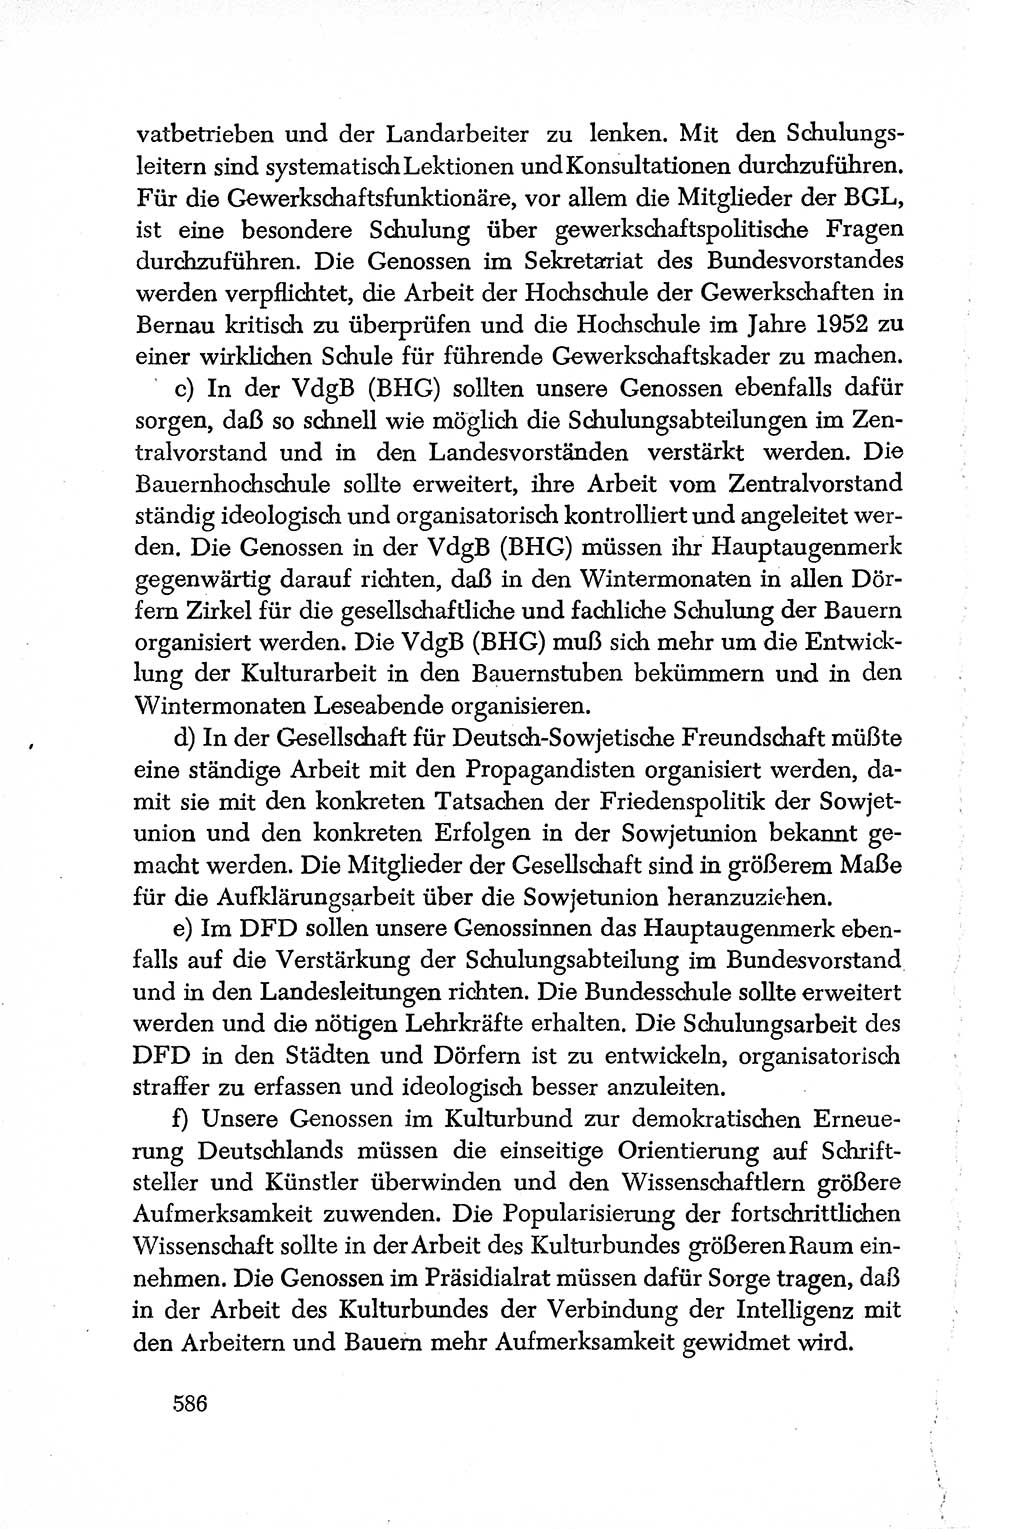 Dokumente der Sozialistischen Einheitspartei Deutschlands (SED) [Deutsche Demokratische Republik (DDR)] 1950-1952, Seite 586 (Dok. SED DDR 1950-1952, S. 586)